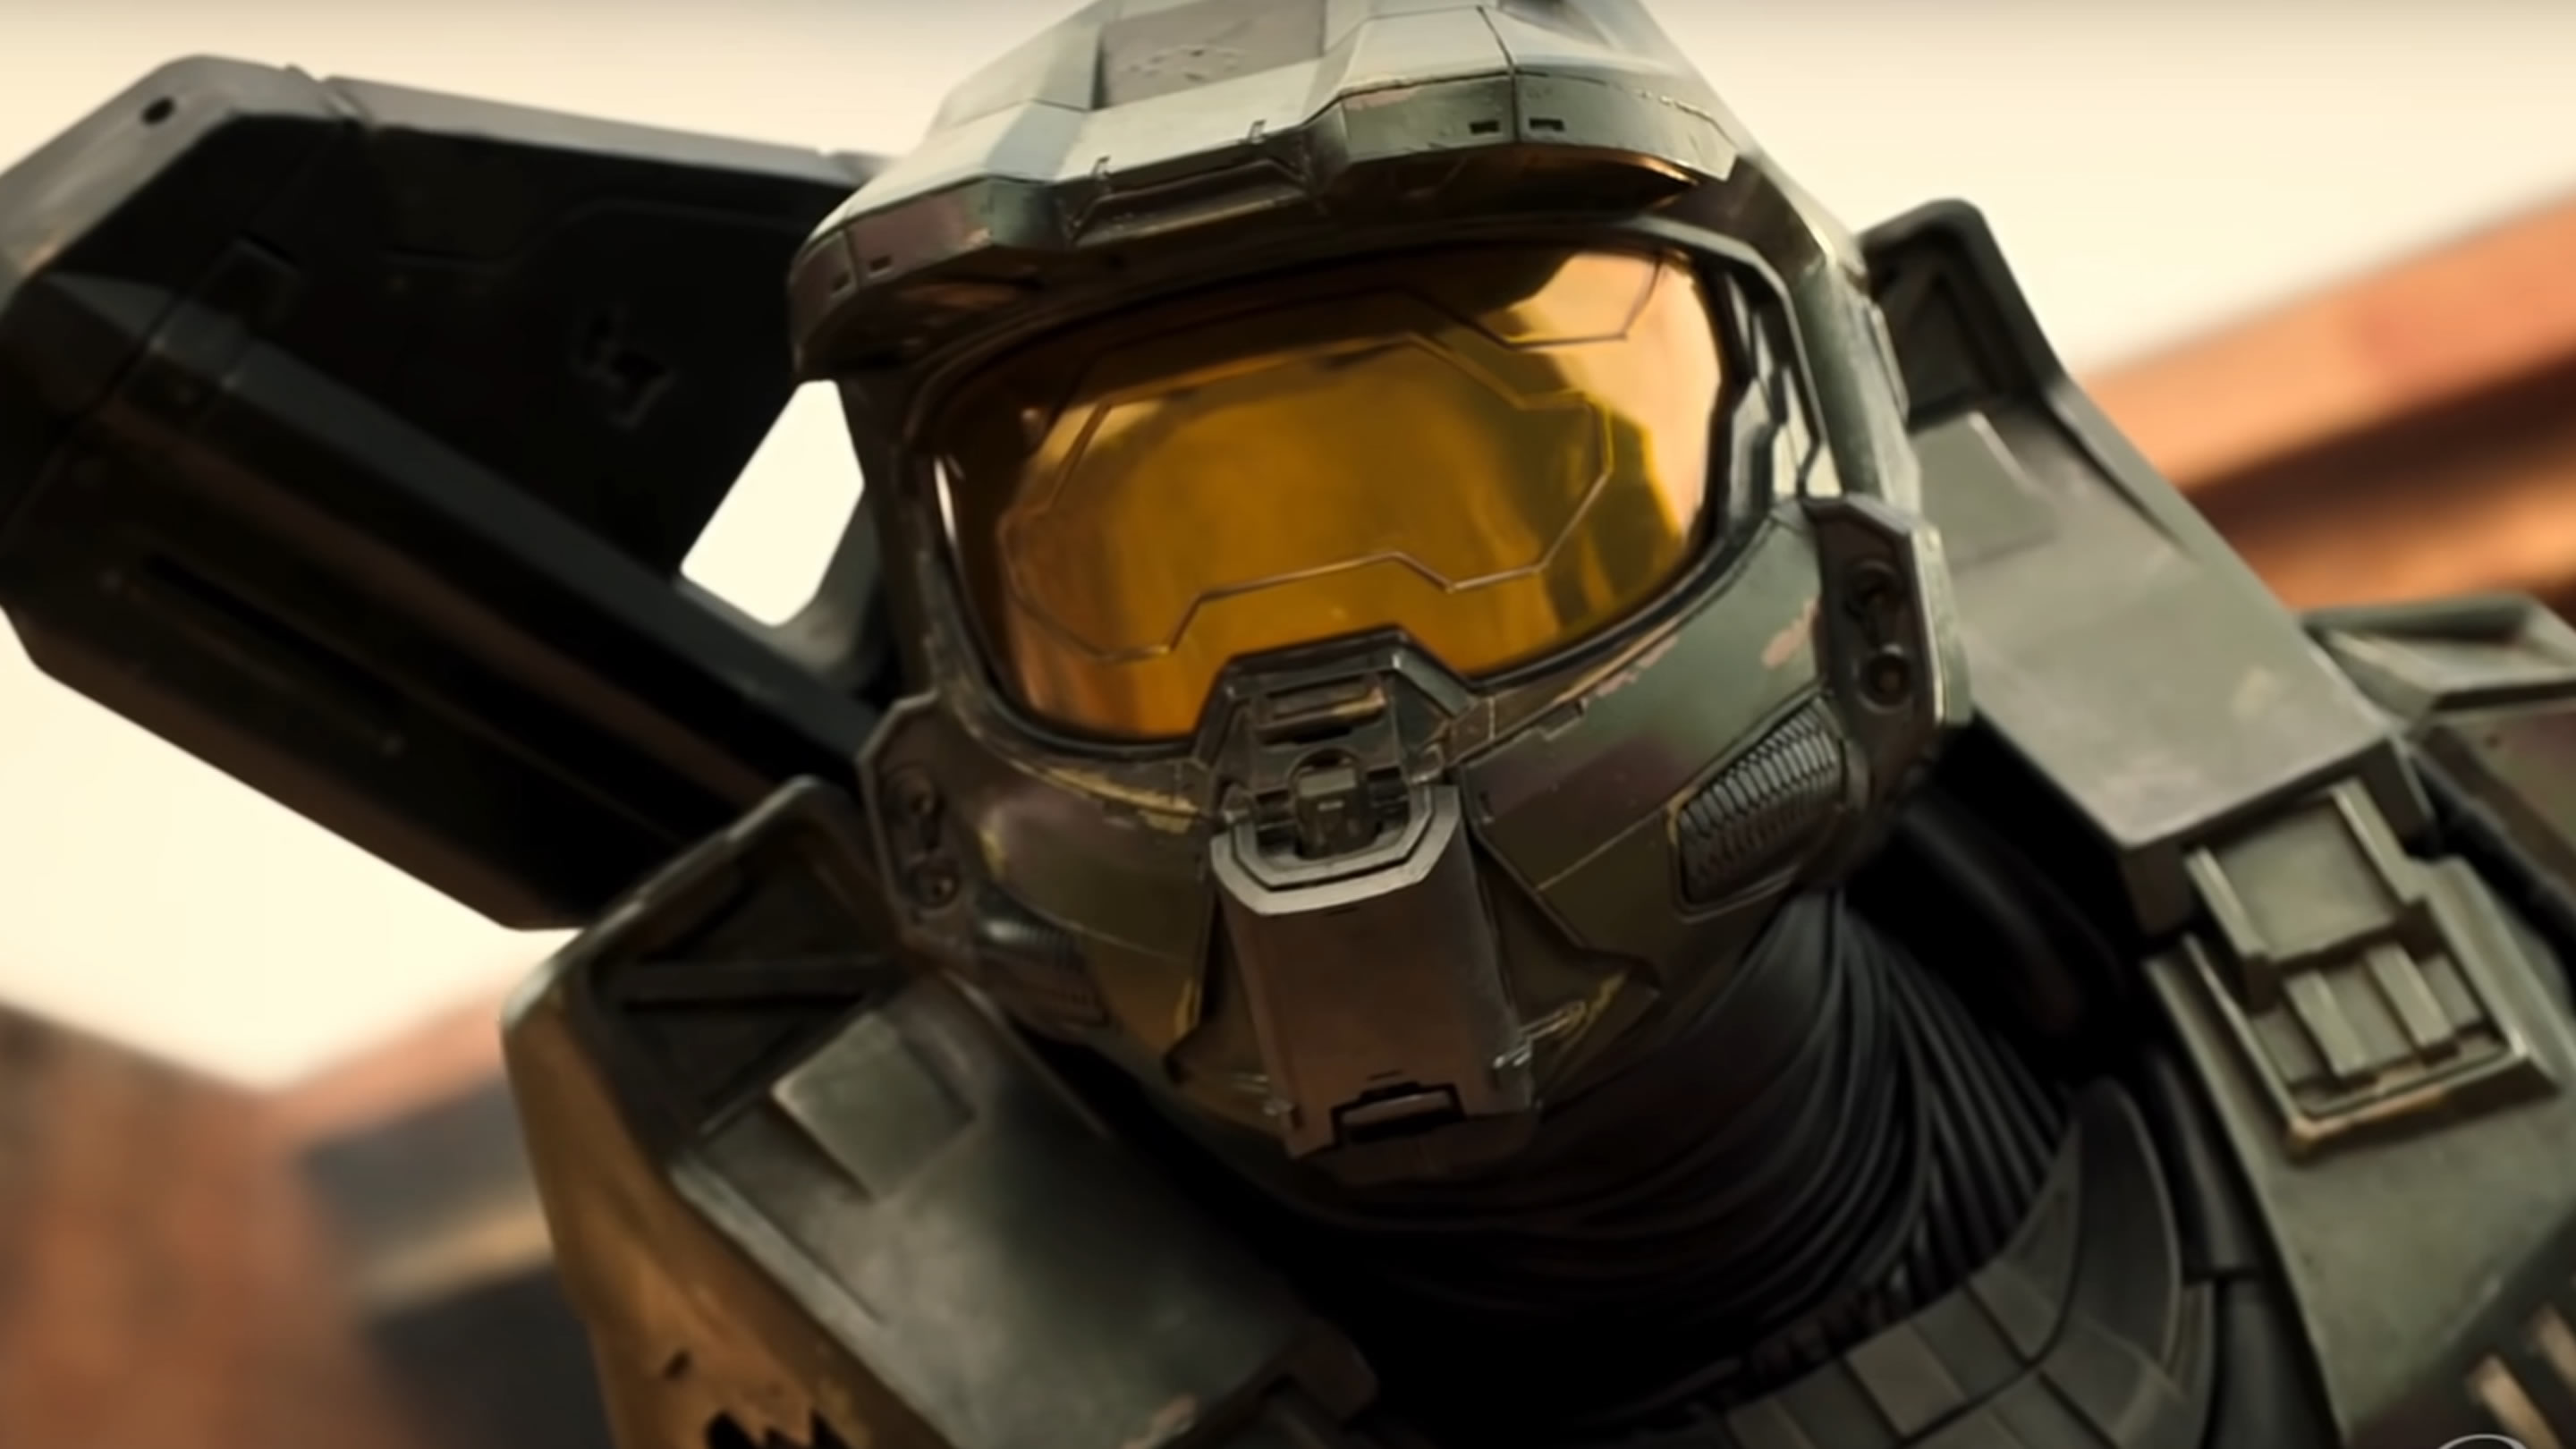 Halo: La serie del videojuego llegará en 2022 a través de Paramount